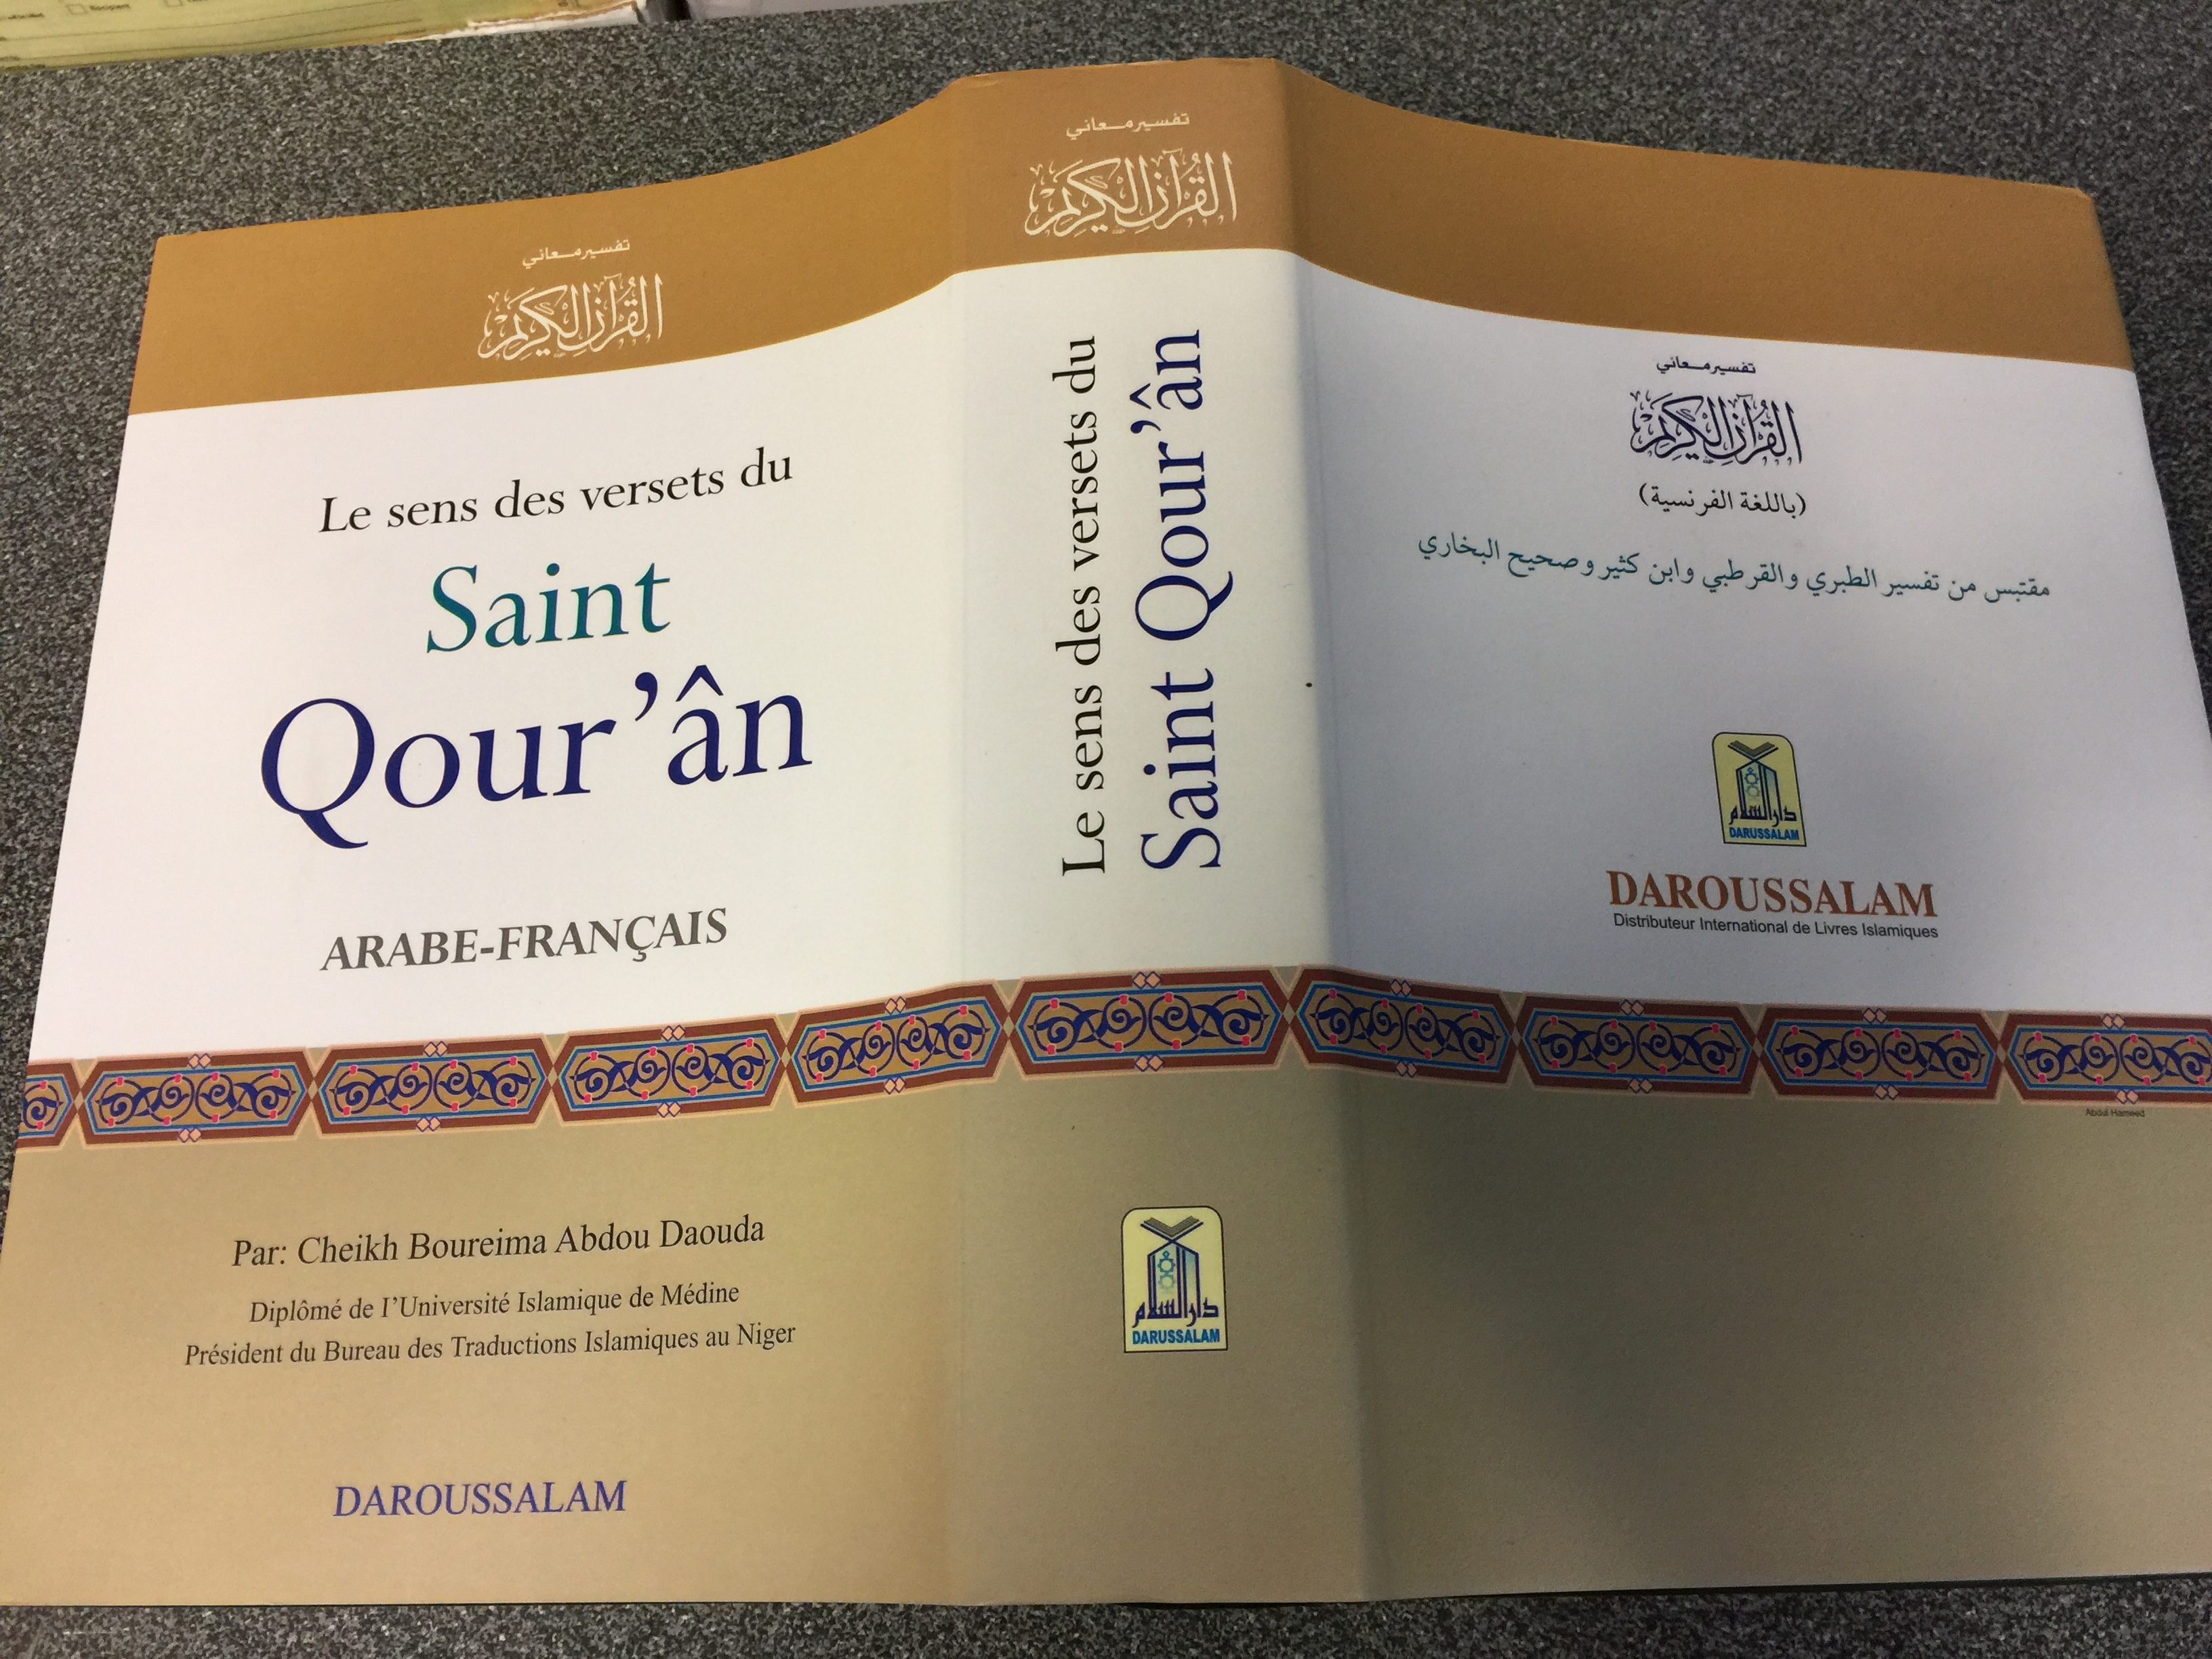 Le sens des versets du Saint Qour'an French - Arabic parallel Quran interpretation 1